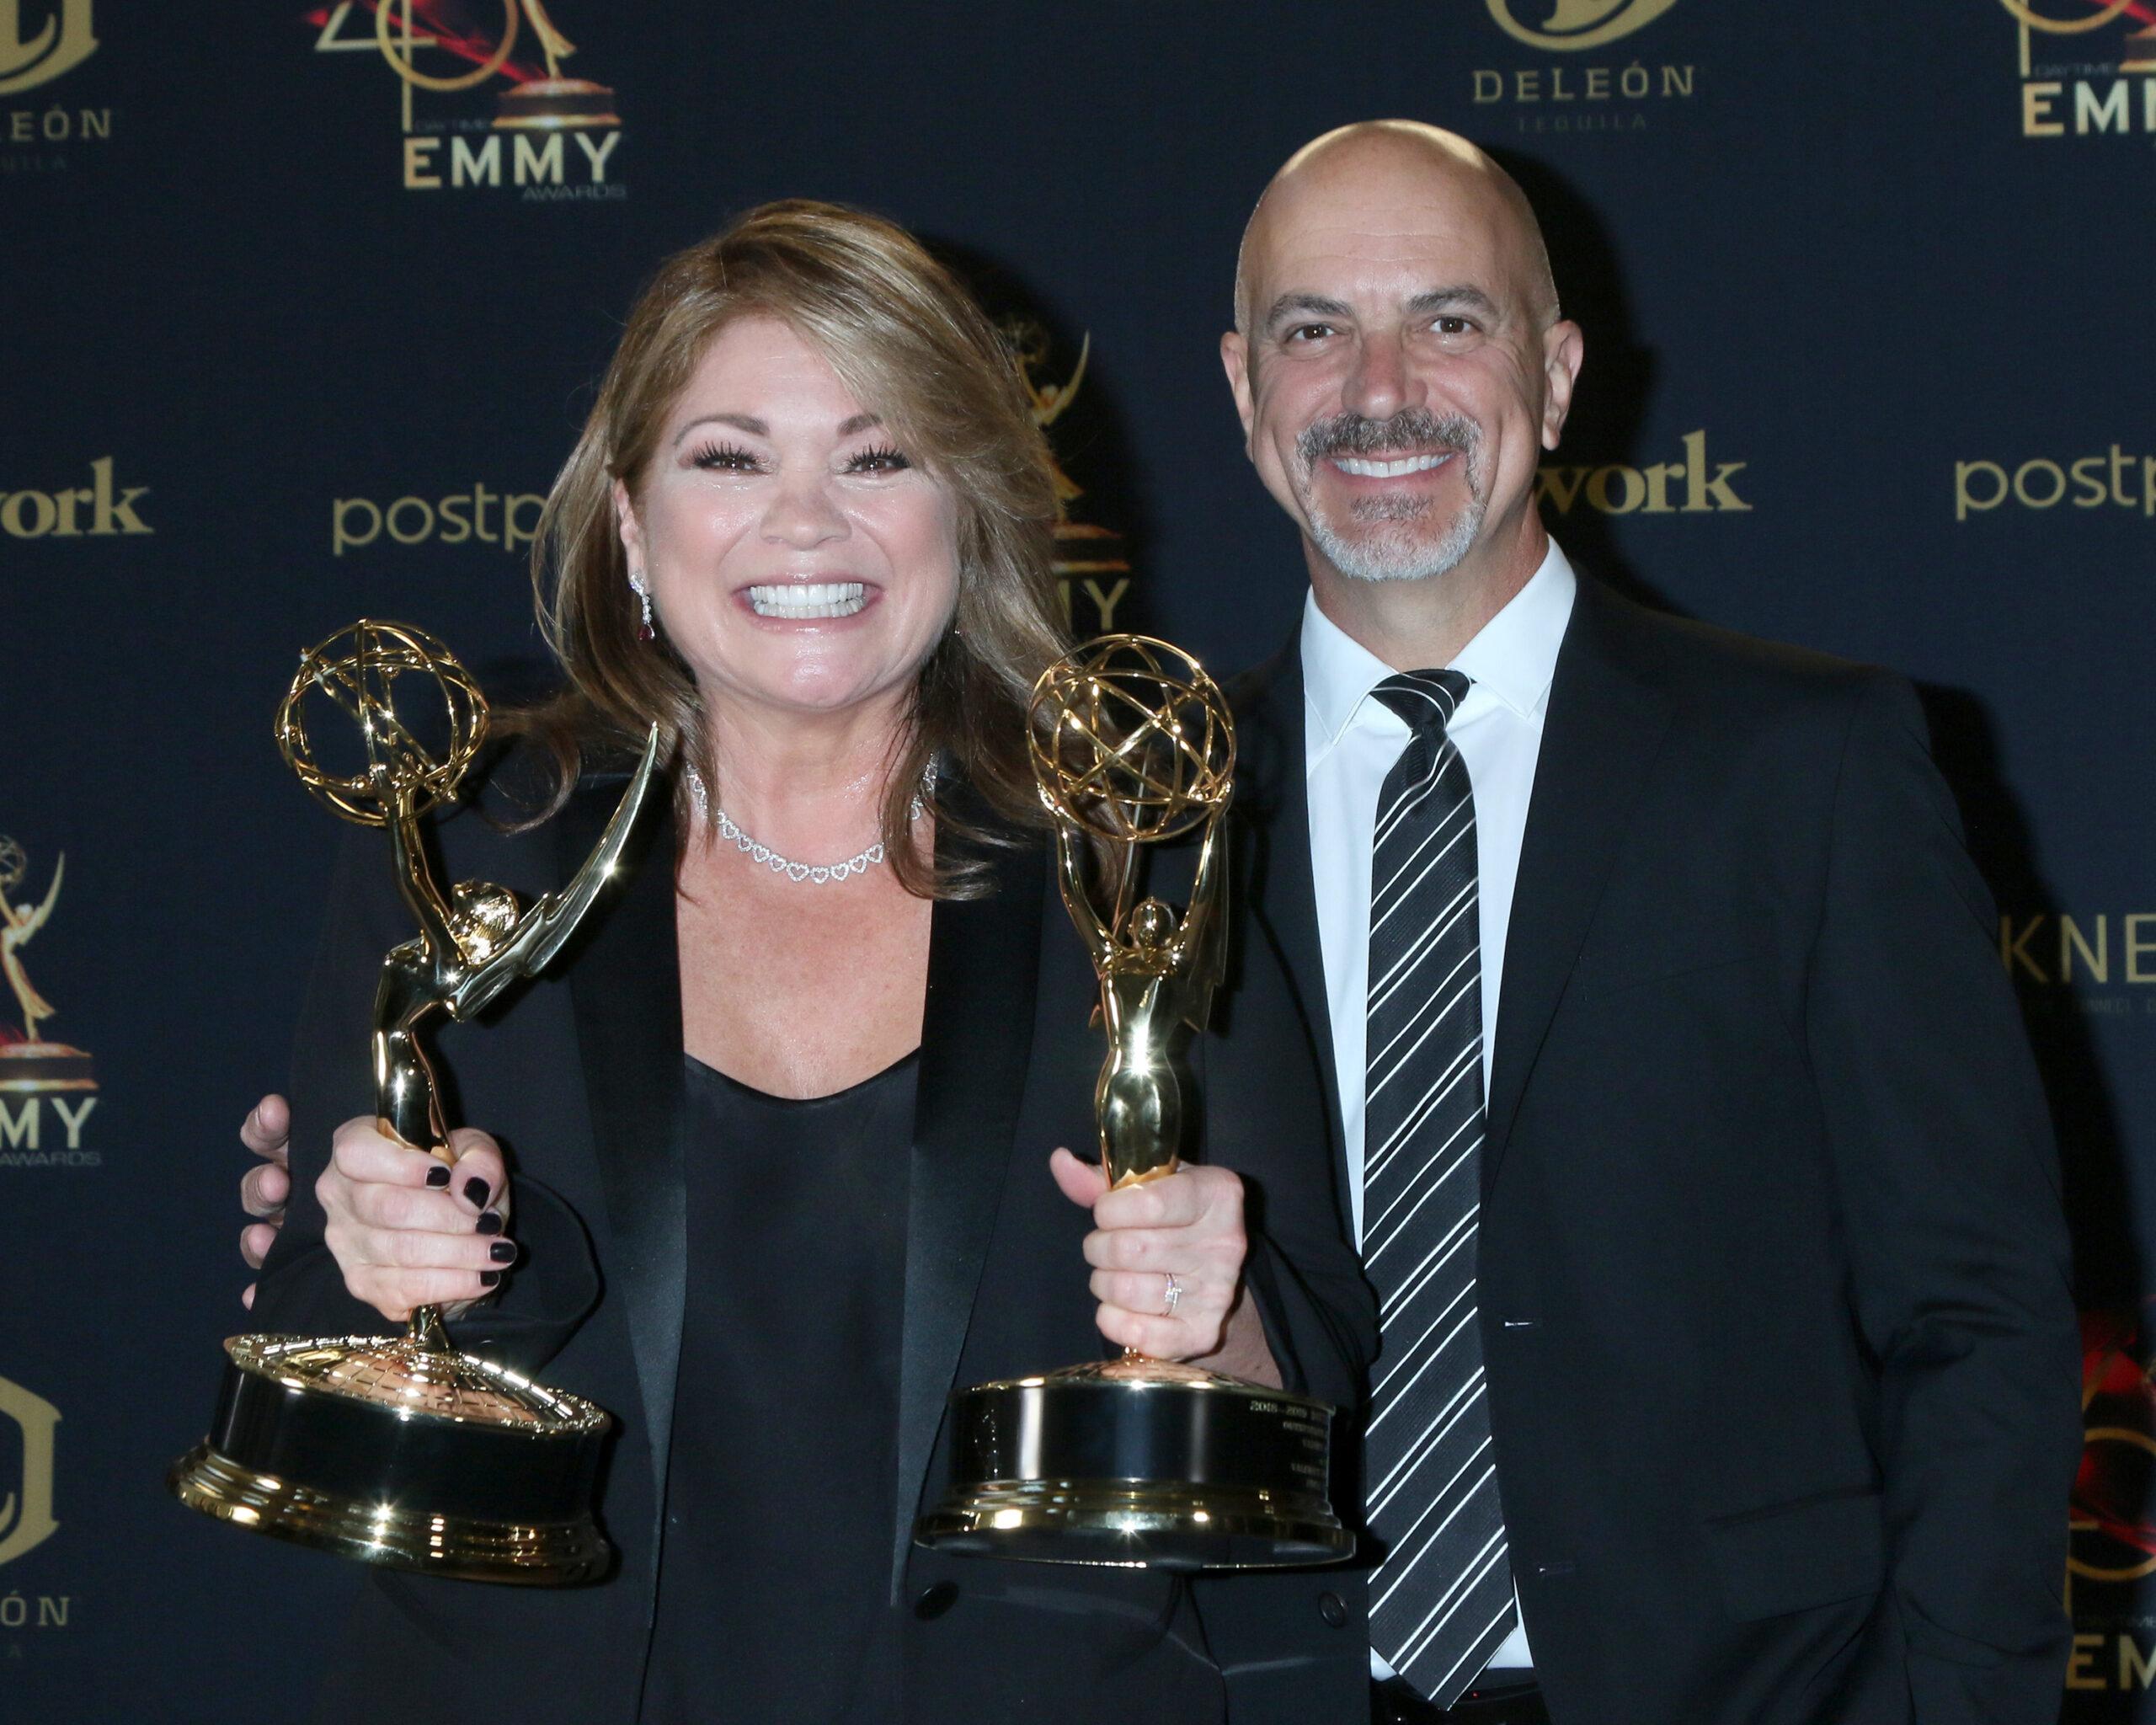 Valerie Bertinelli & Tom Vitale at the 2019 Daytime Emmy Awards - Pasadena